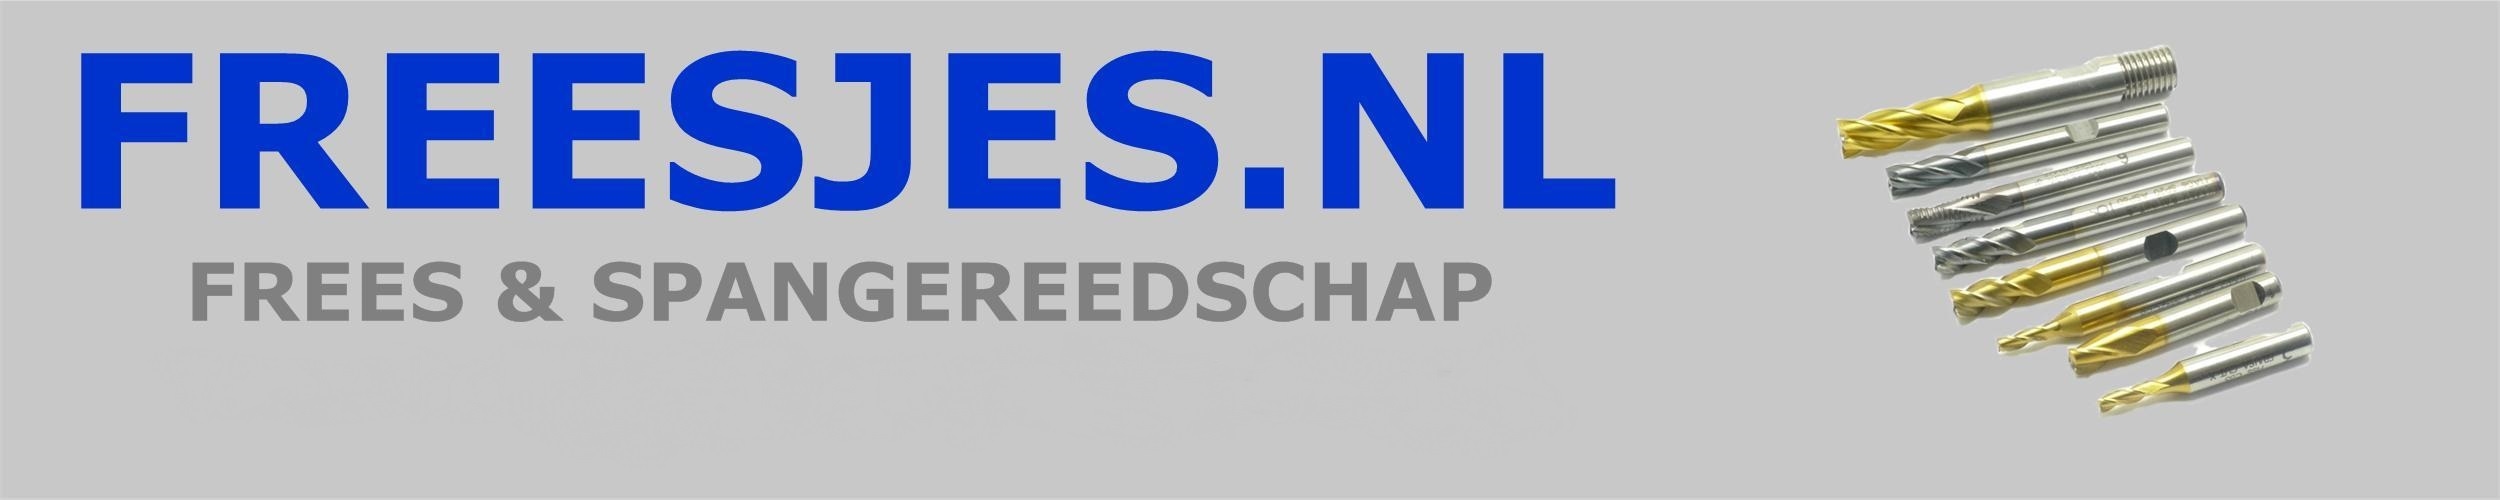 Freesjes.nl